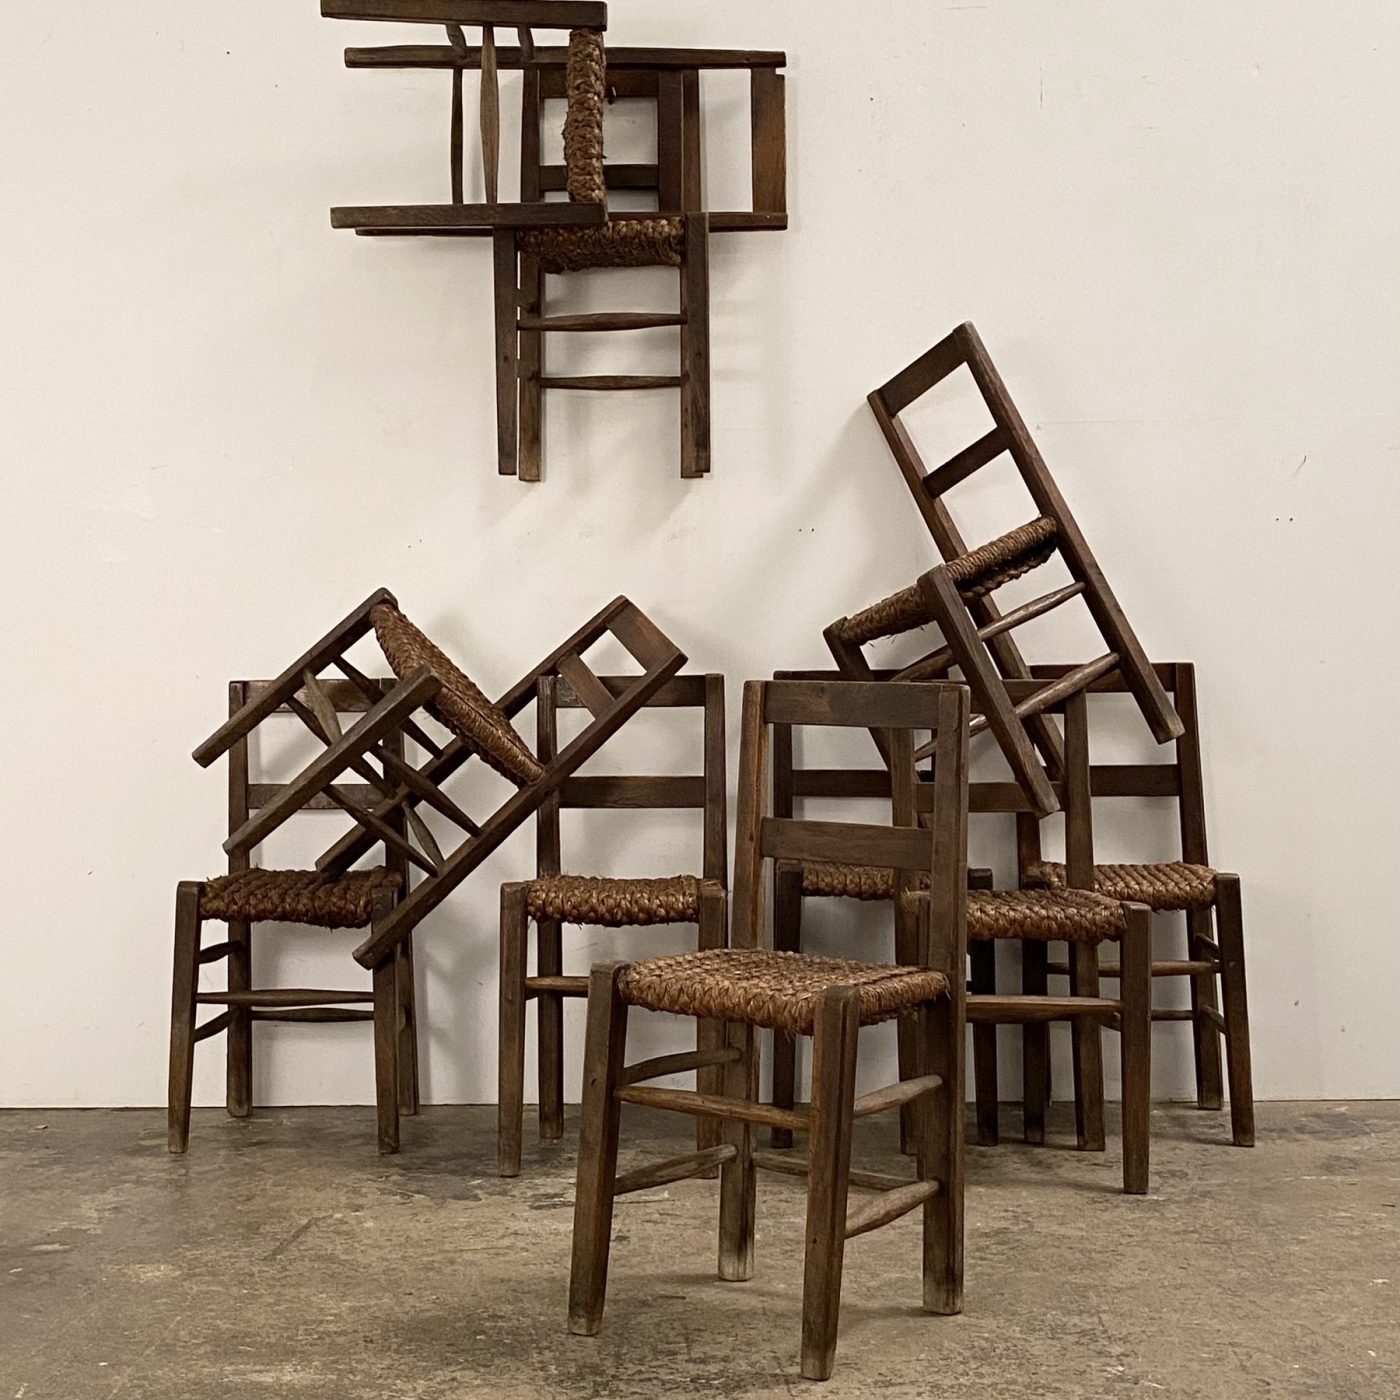 objet-vagabond-naive-chairs0005